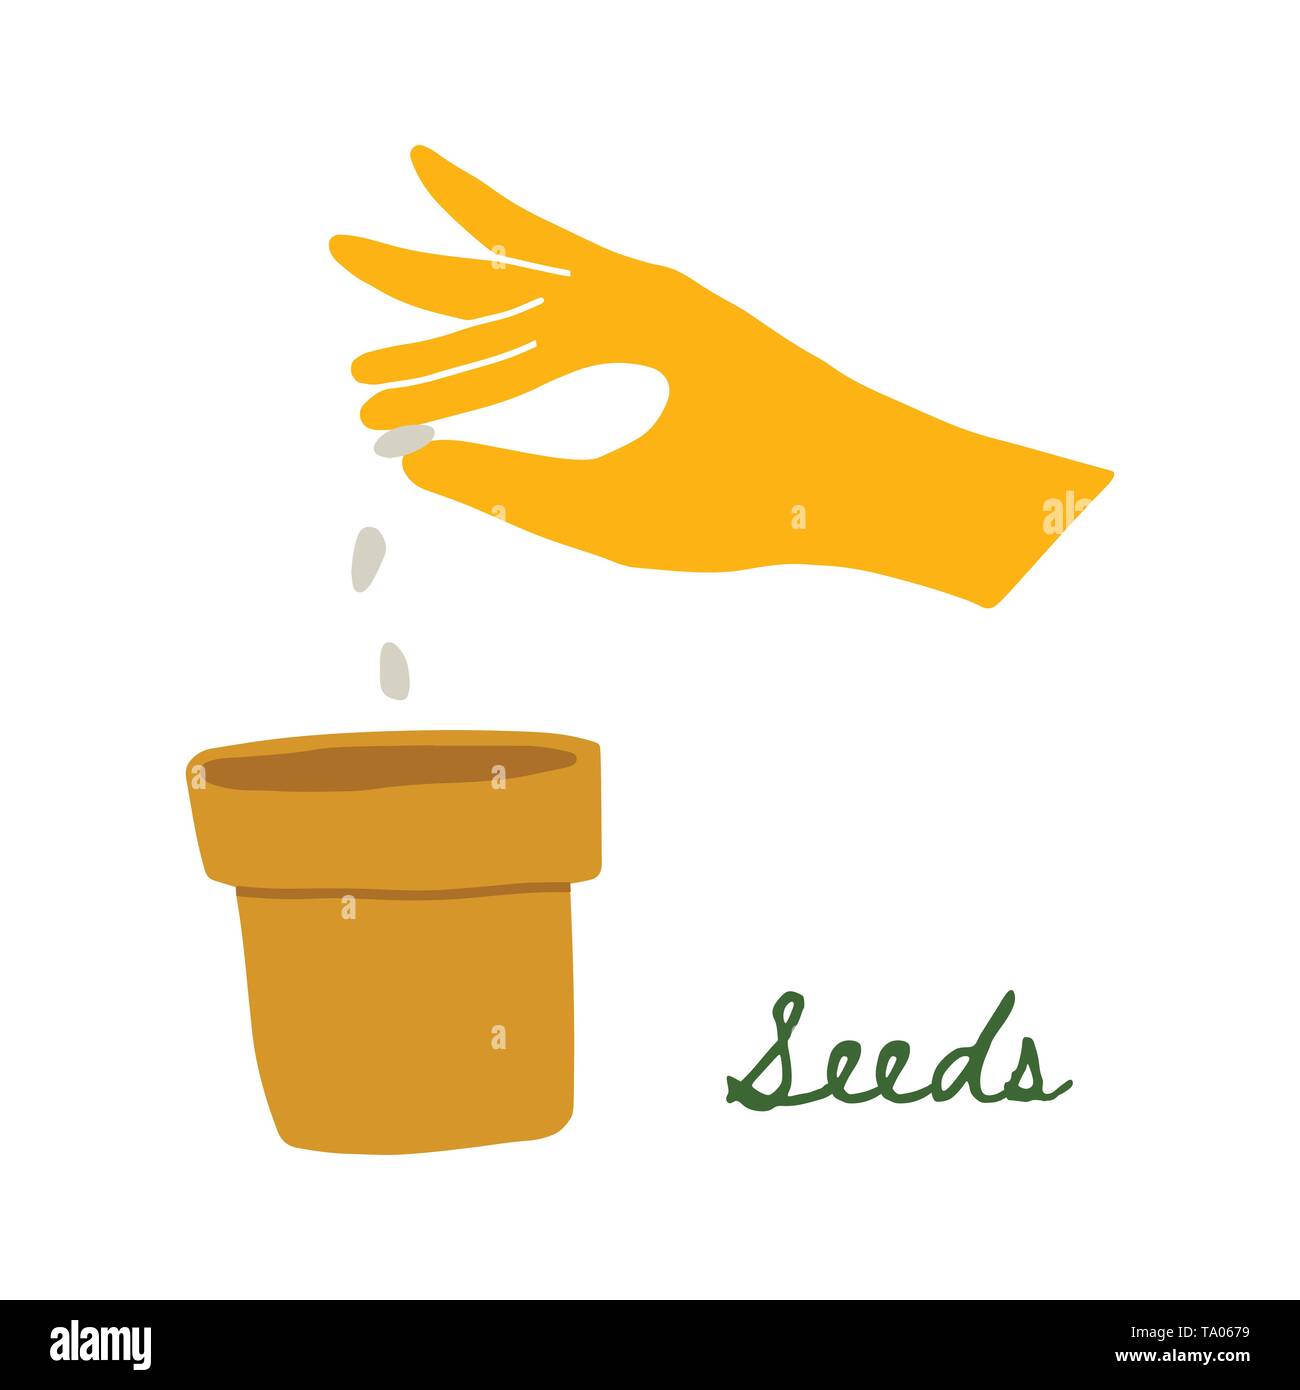 Illustrazione vettoriale di una mano in un giallo guanto di gomma di piantare i semi in una pentola. Disegnare a mano Doodle stile. Giardino mani coltivare ortaggi. Home garden. Illustrazione Vettoriale